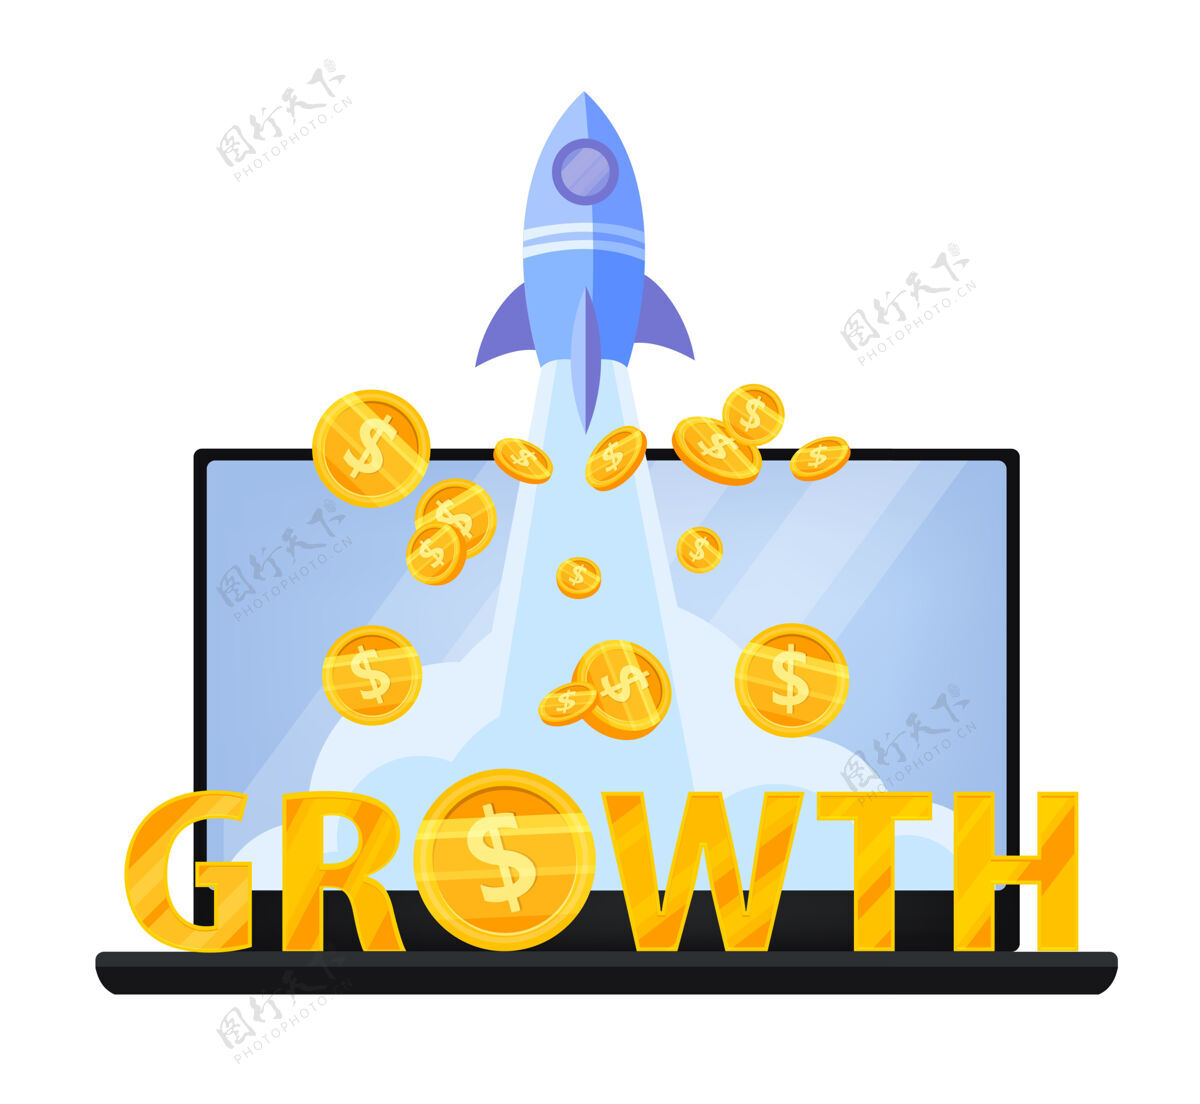 增长收入增长或货币收入增加财务概念与笔记本电脑 飞行美元硬币 金字平板电脑股票火箭